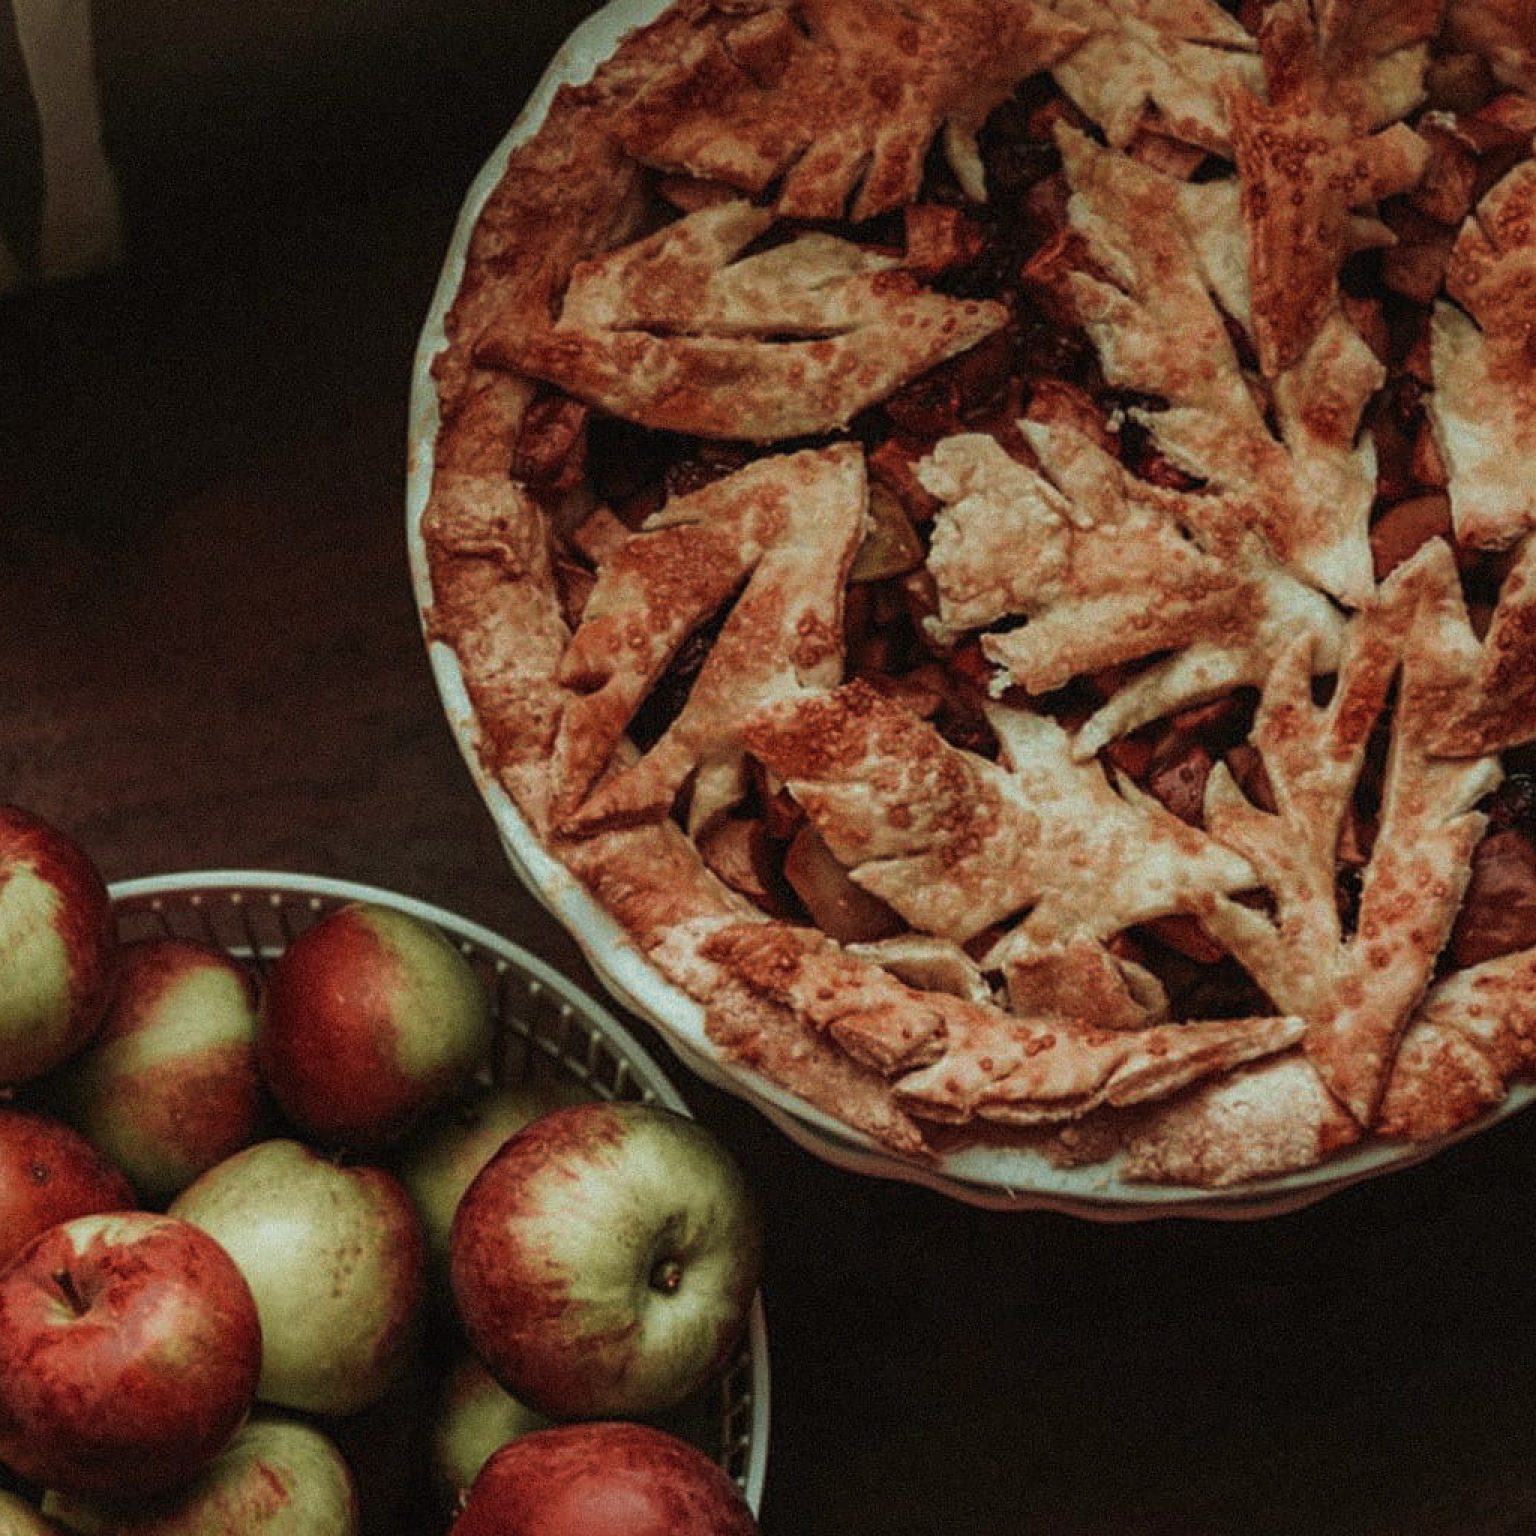 Selbstgemachter Ofenschlupfer sowie eine Schüssel voller Äpfel stehen auf einem Tisch